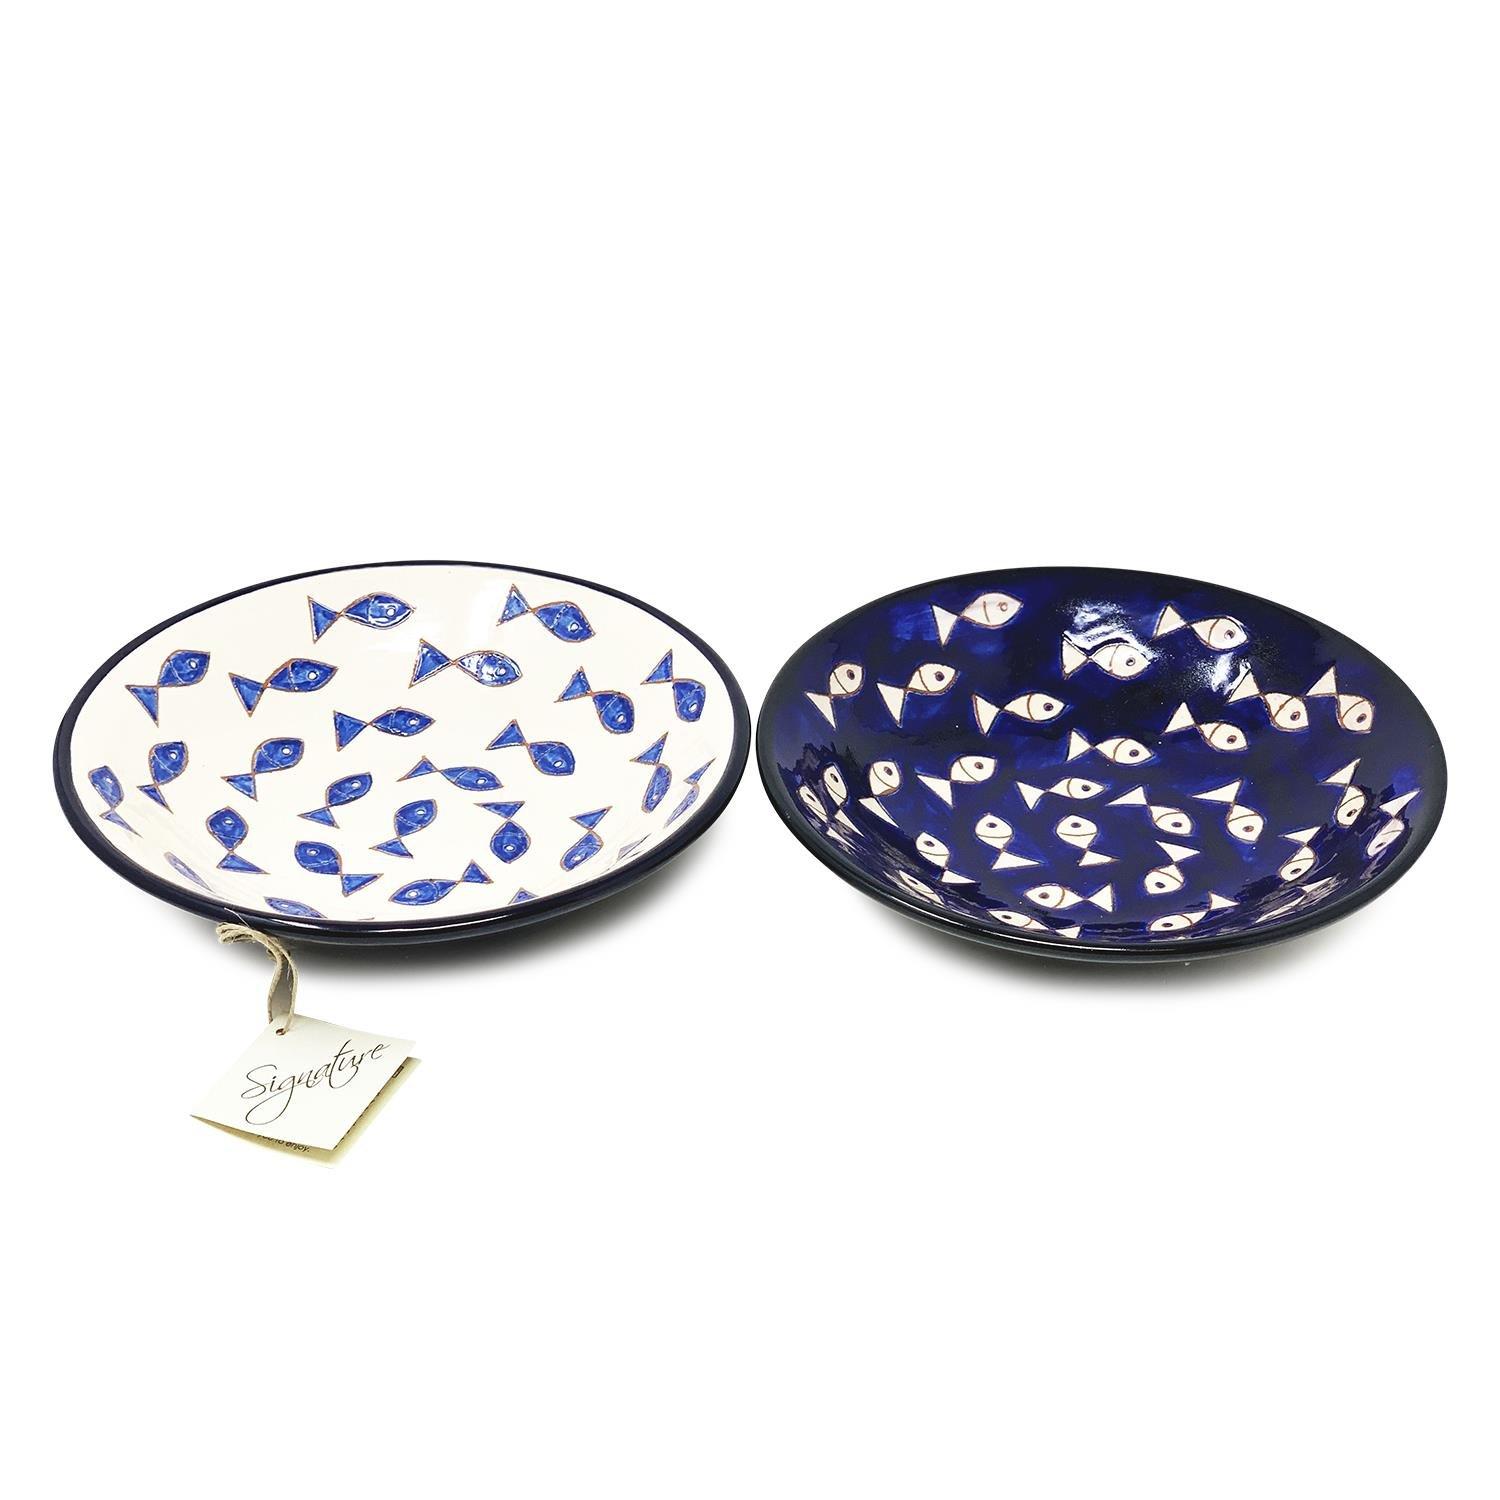 Signature Blue & White Fish Hand Painted Ceramic Set of 2 Mixed Pasta Bowls (Diam) 23cm